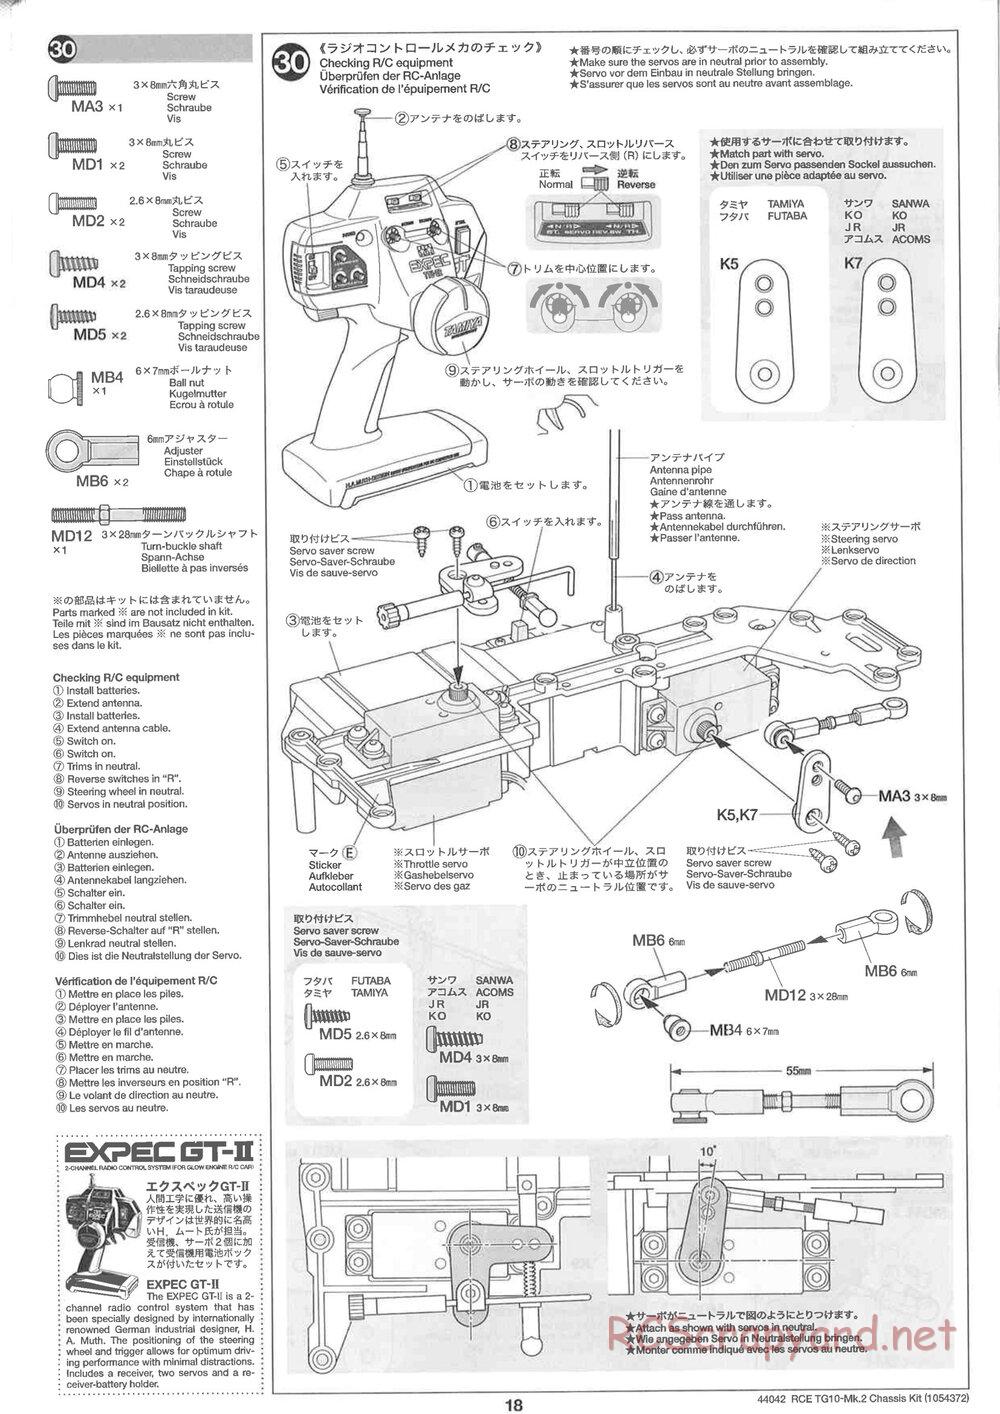 Tamiya - TG10 Mk.2 Chassis - Manual - Page 18